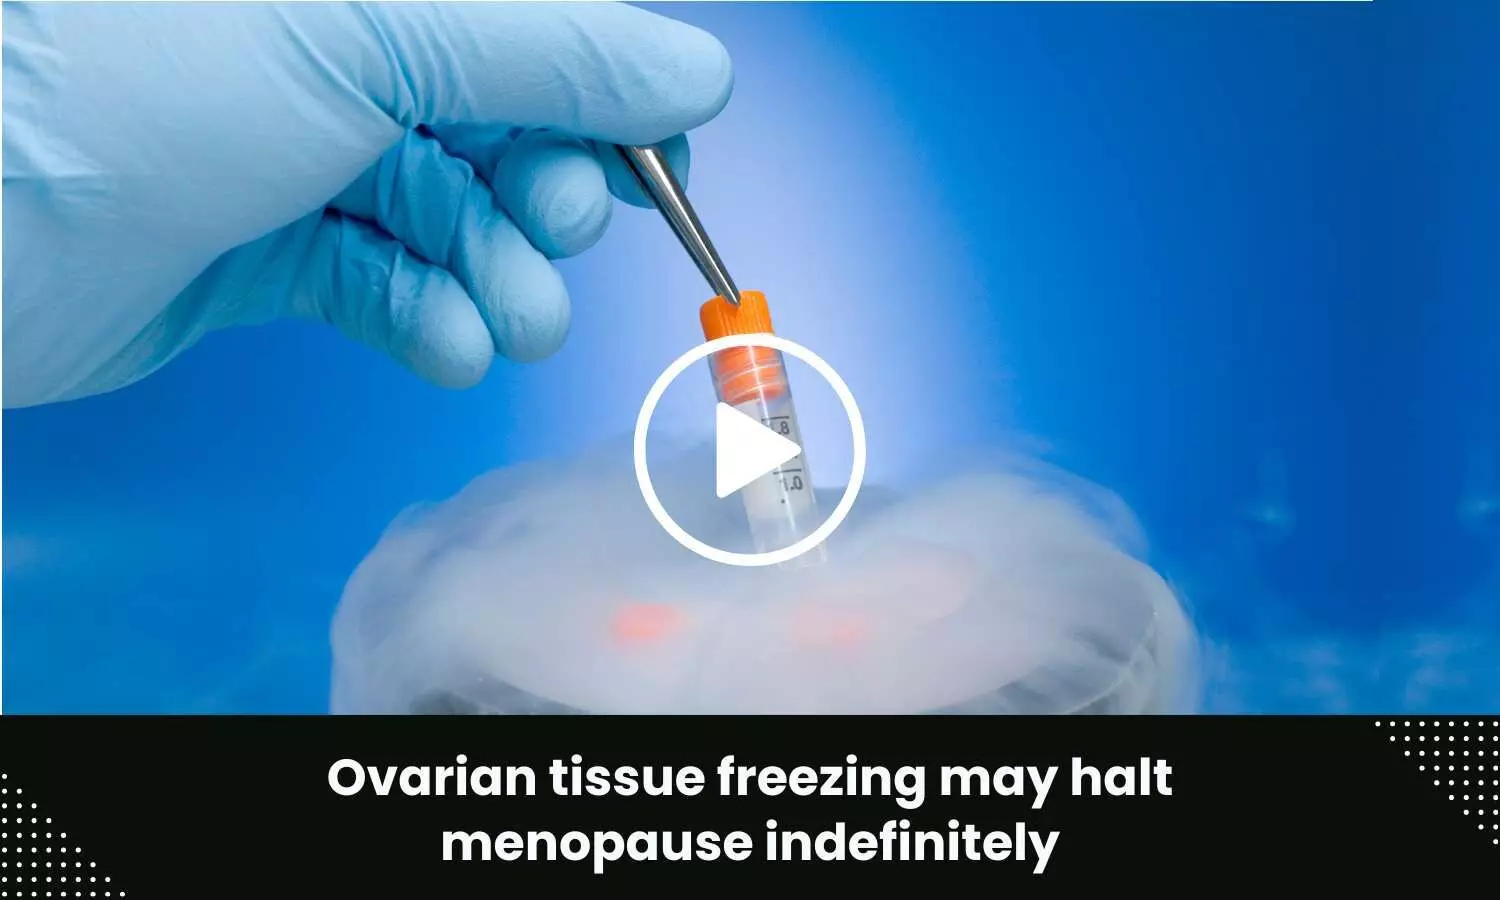 Ovarian tissue freezing may halt menopause indefinitely